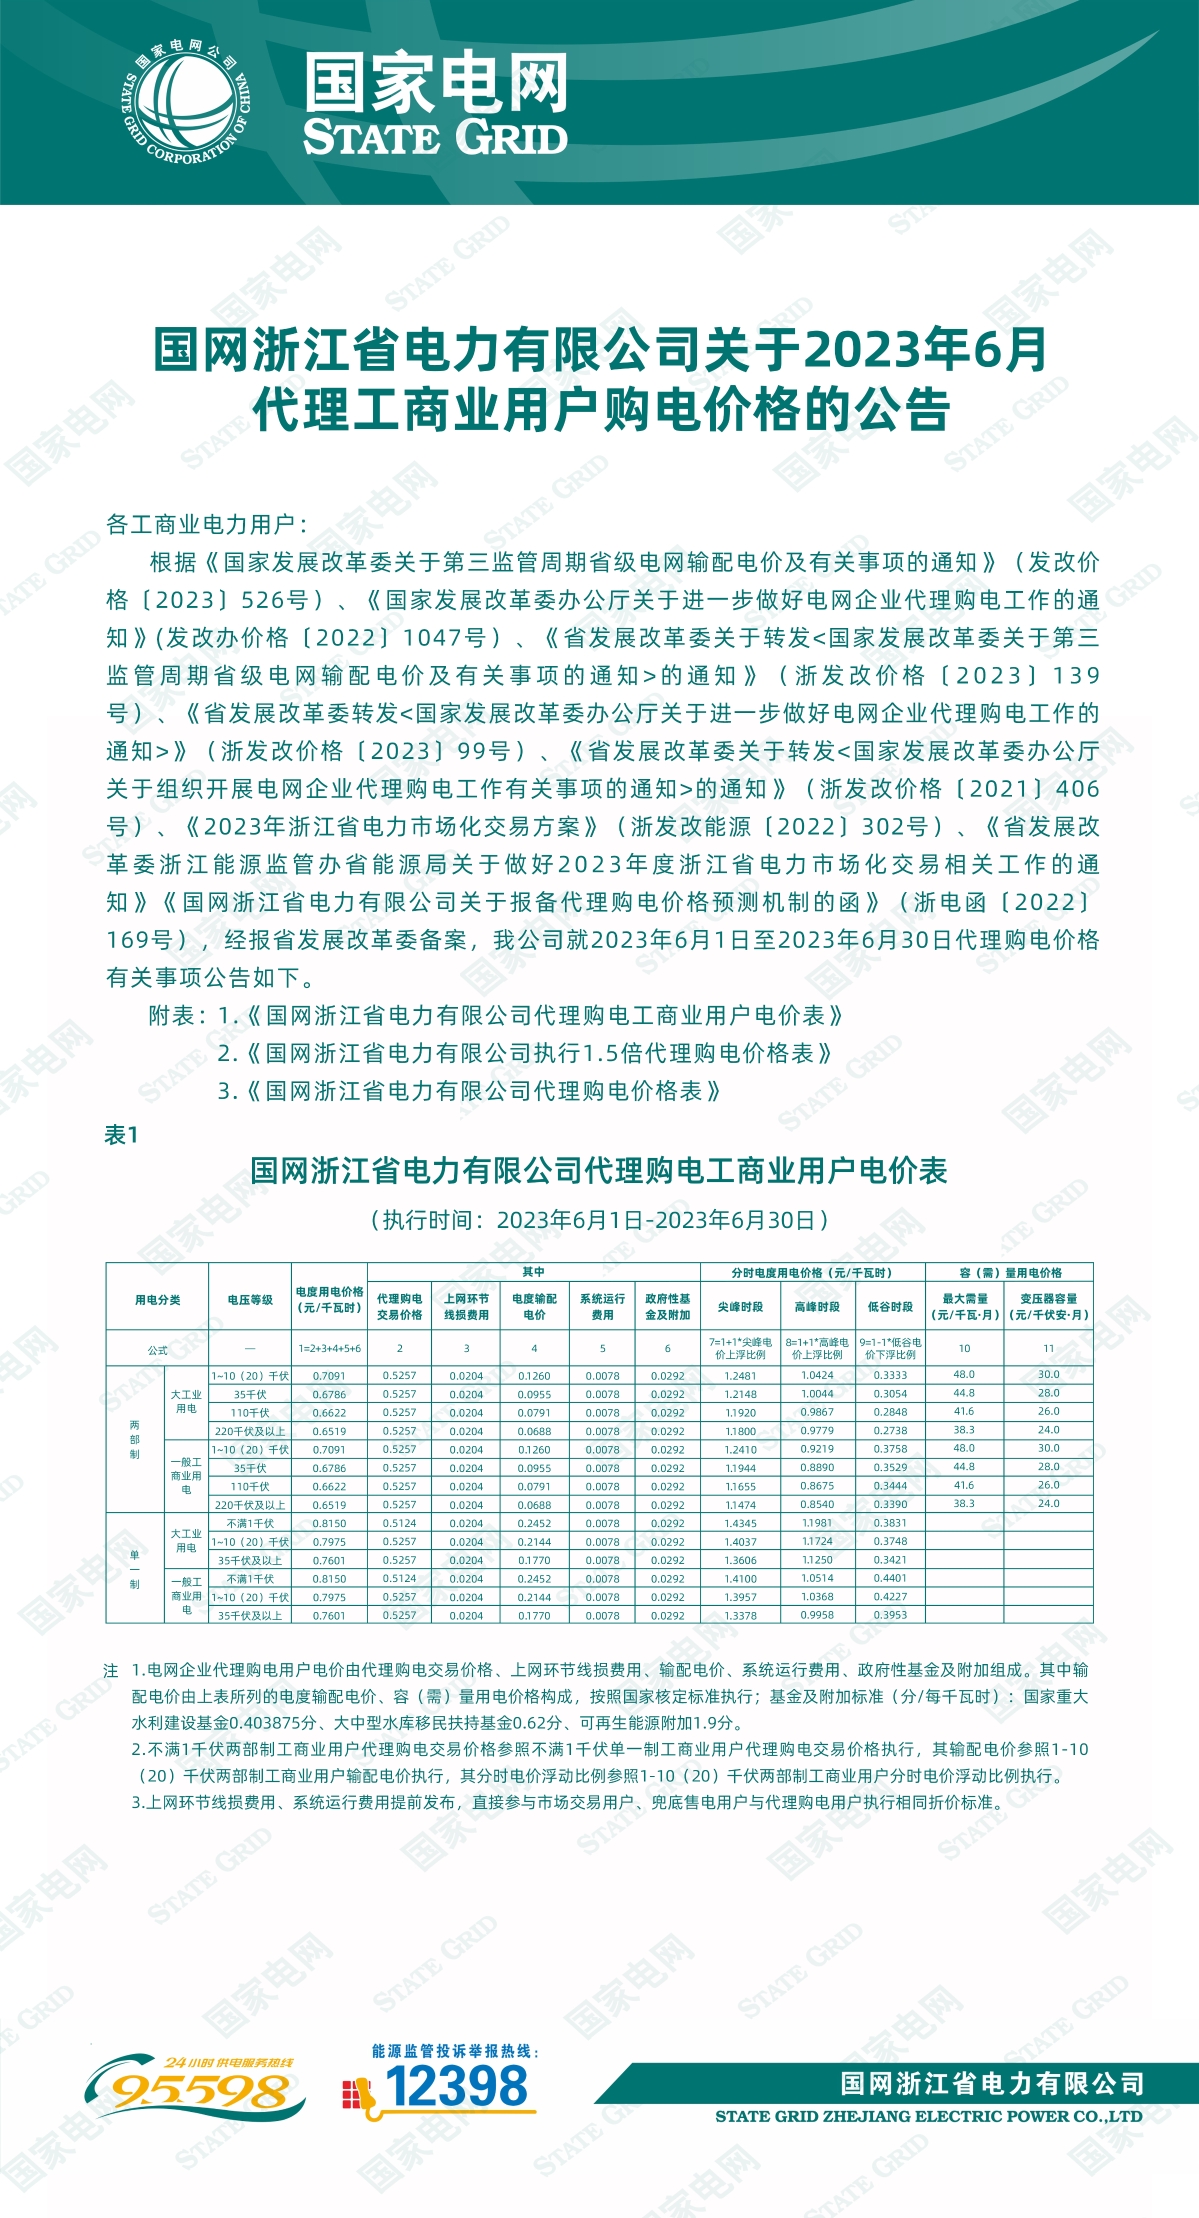 国网浙江省电力有限公司关于2023年6月代理工商业用户购电价格的公告1.jpg